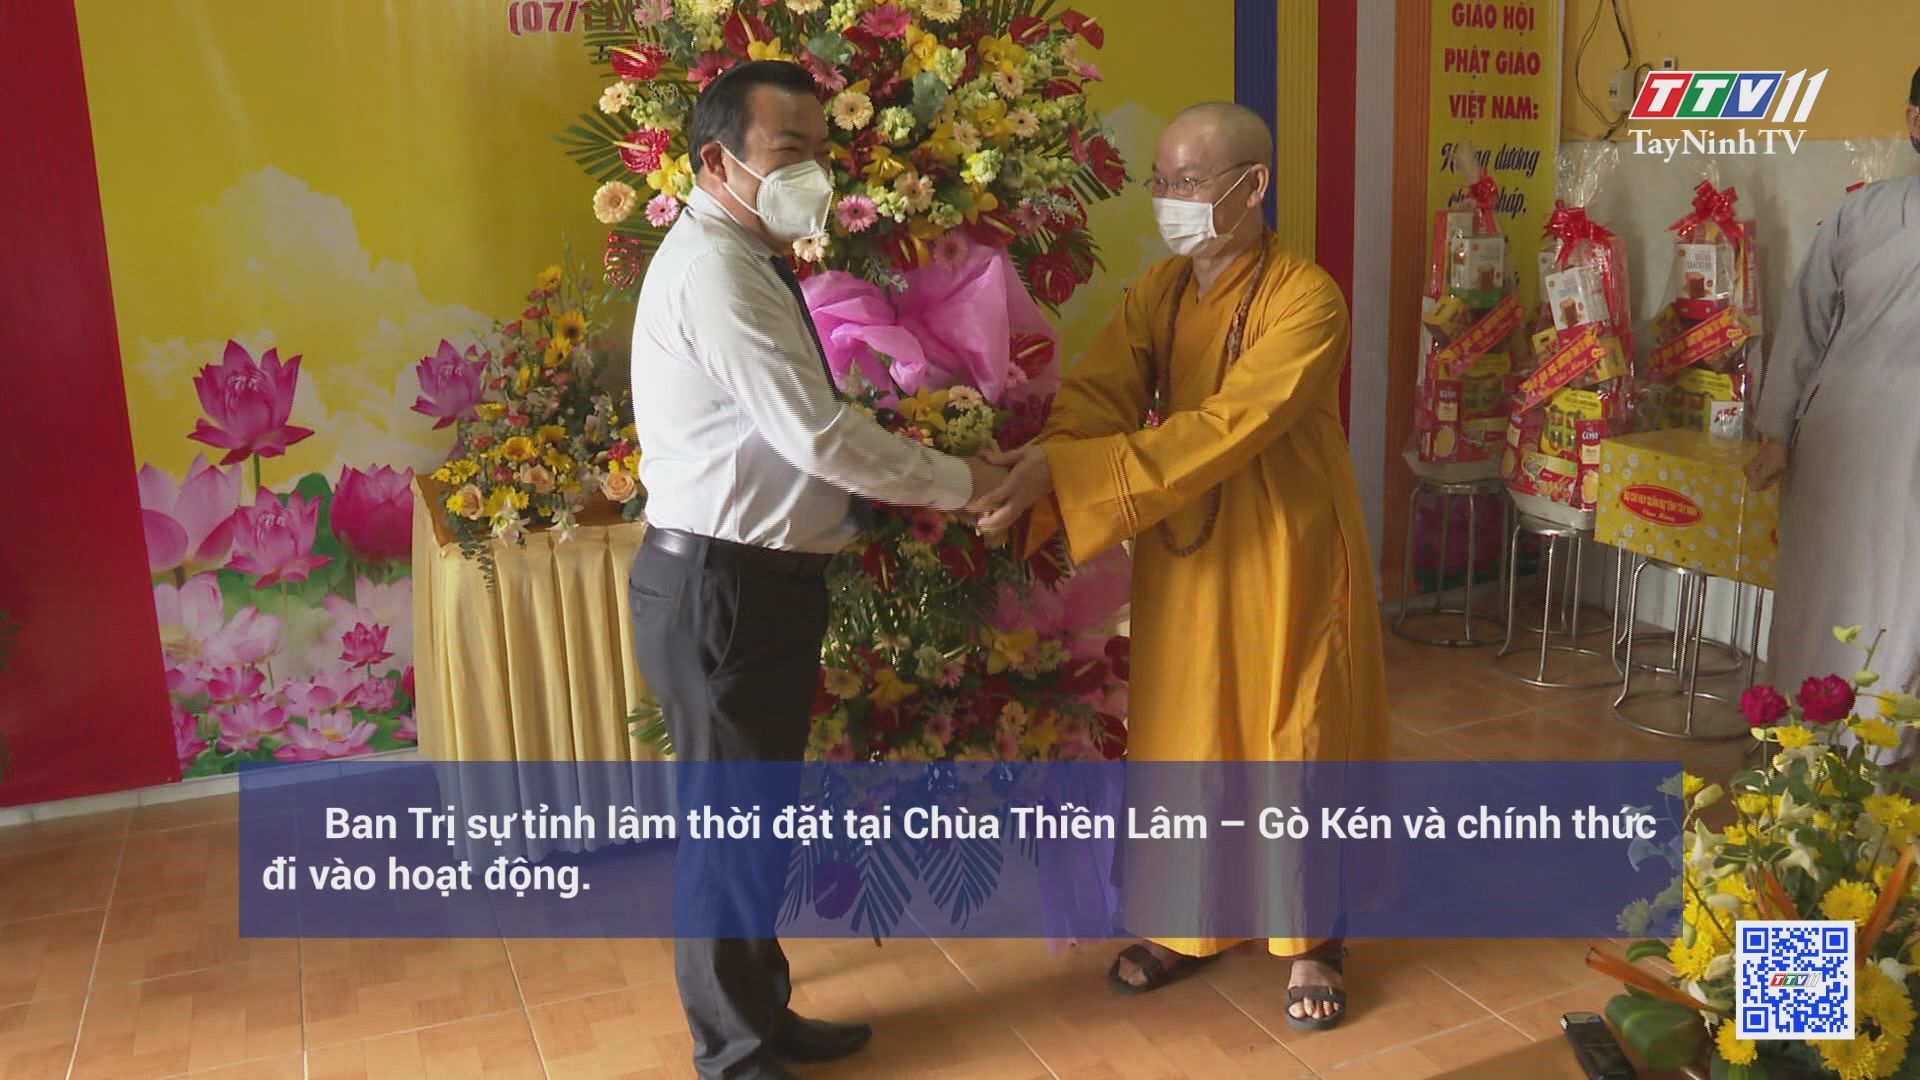 Phật giáo Tây Ninh chung sức phòng chống dịch COVID-19 | ĐẠI ĐOÀN KẾT TOÀN DÂN | TayNinhTV